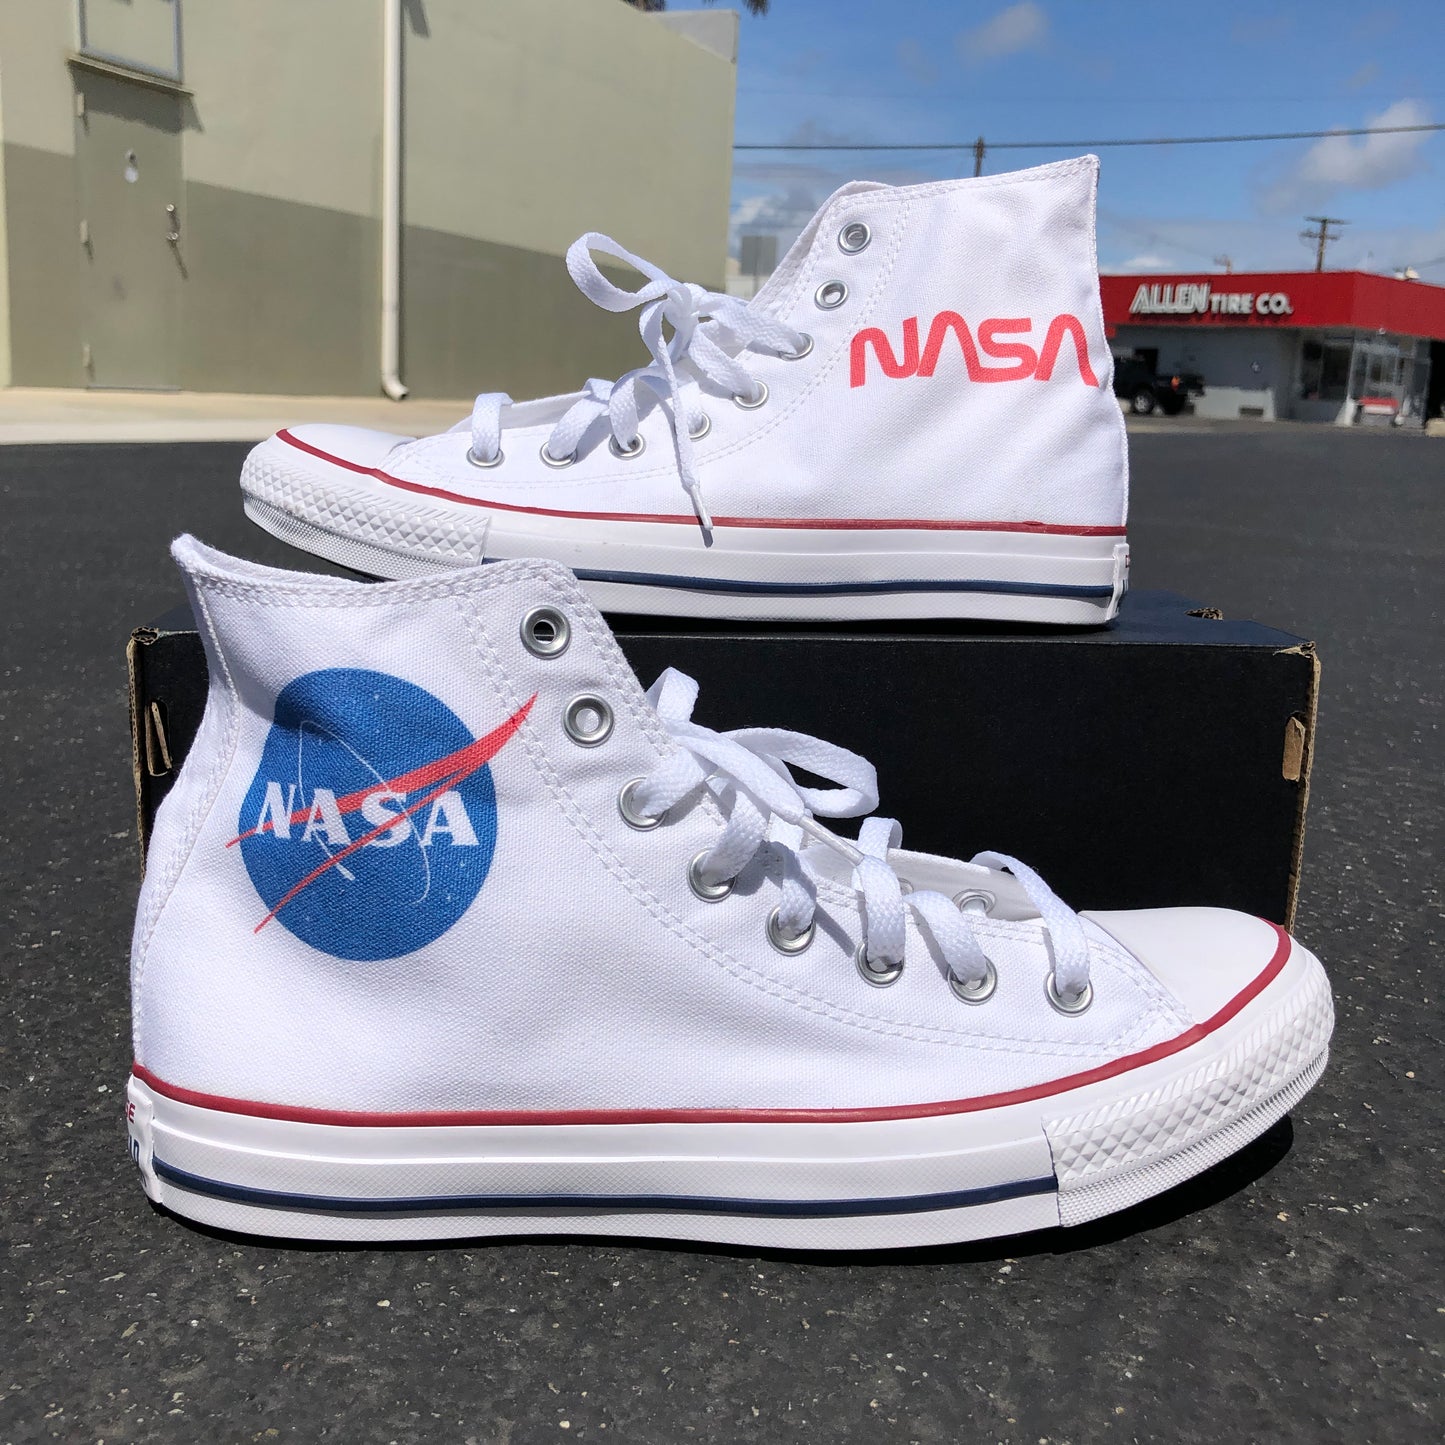 NASA Converse